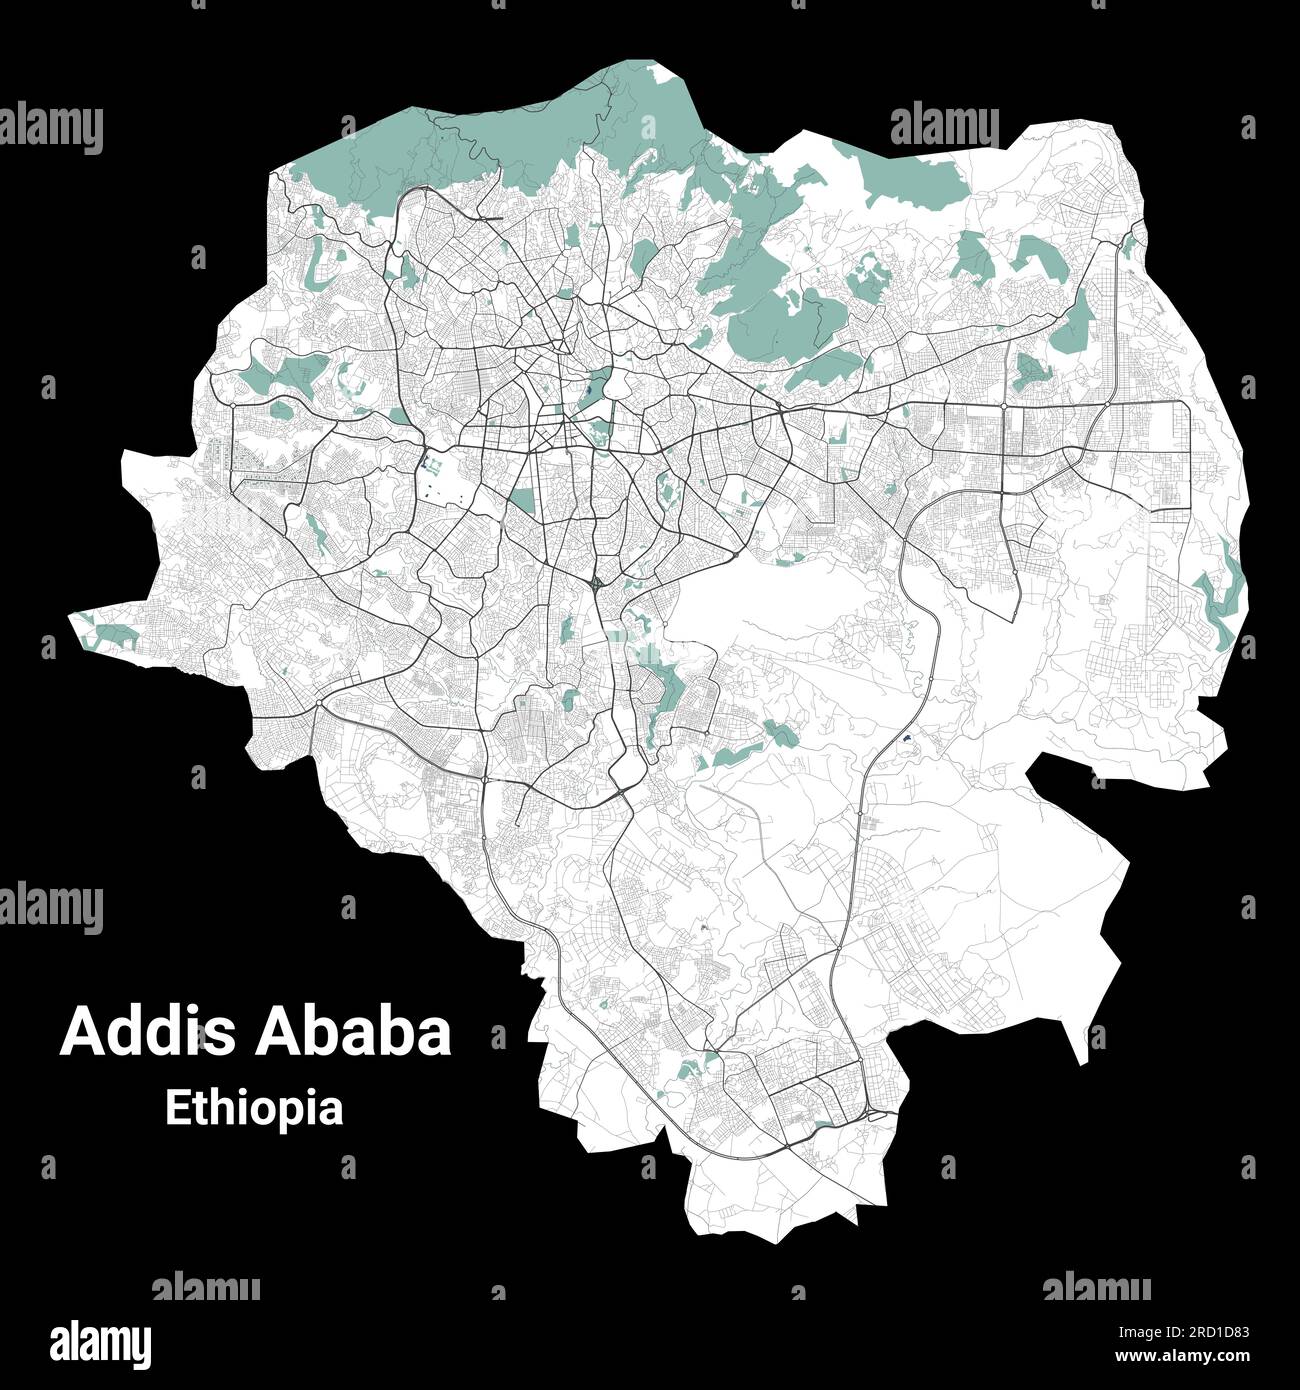 Mappa di Addis Abeba, capitale dell'Etiopia. Mappa dell'area amministrativa comunale con fiumi e strade, parchi e ferrovie. Illustrazione vettoriale. Illustrazione Vettoriale